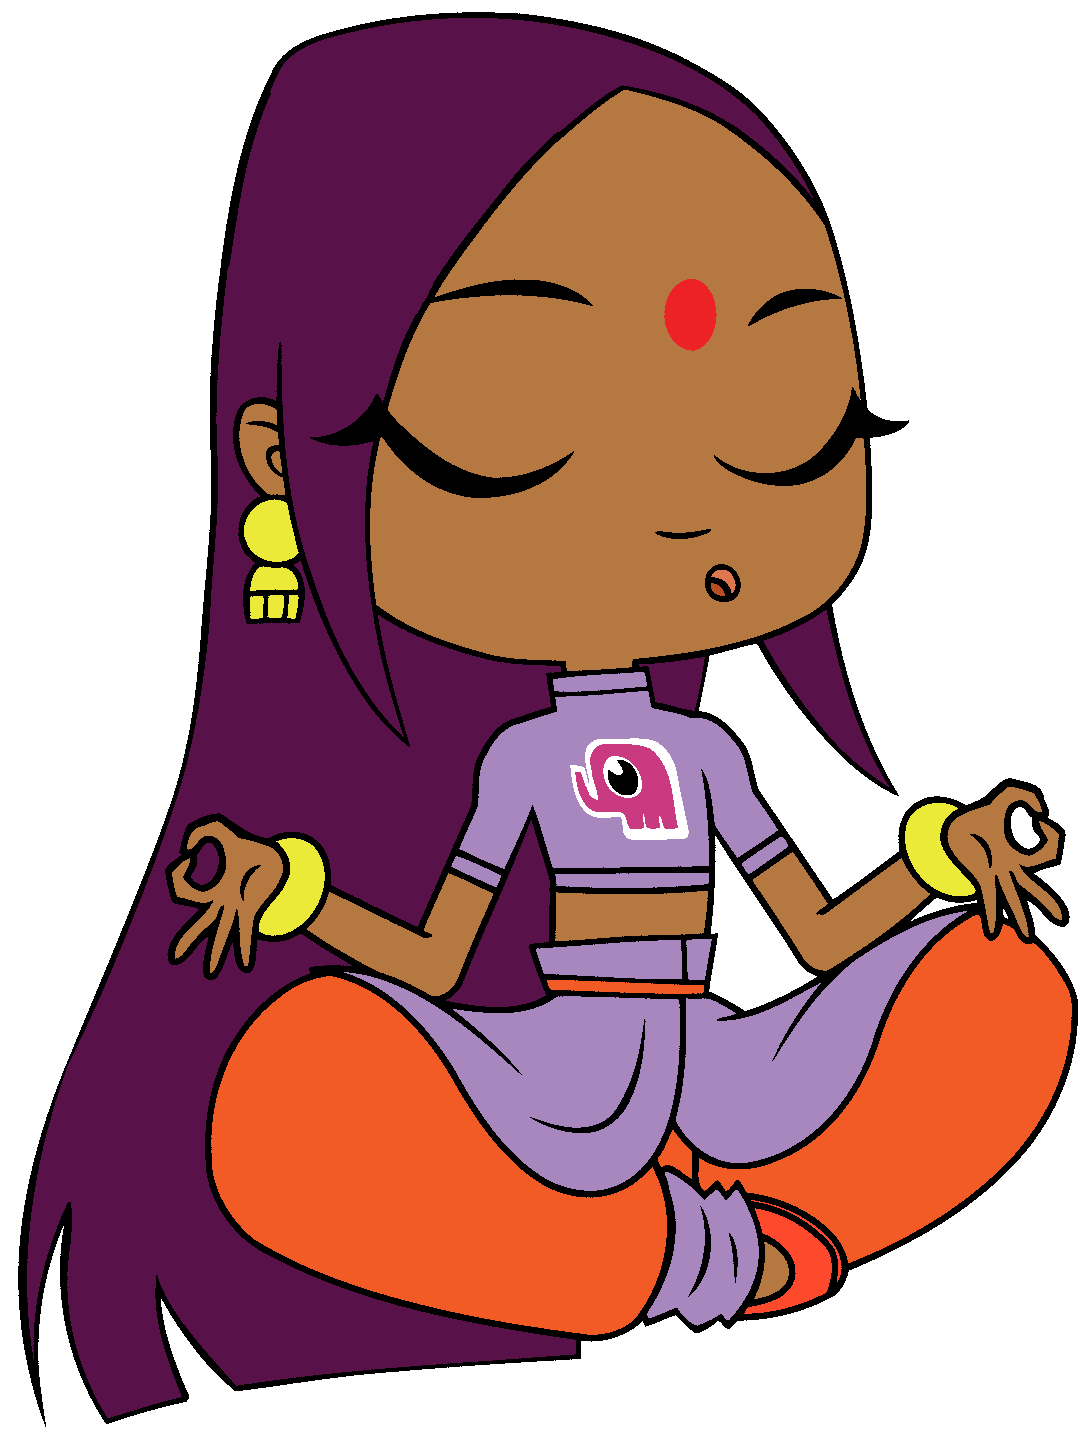 Indian Cartoon Character Cartoon Illustration Of South Indian Woman Stock Vector Bodemawasuma